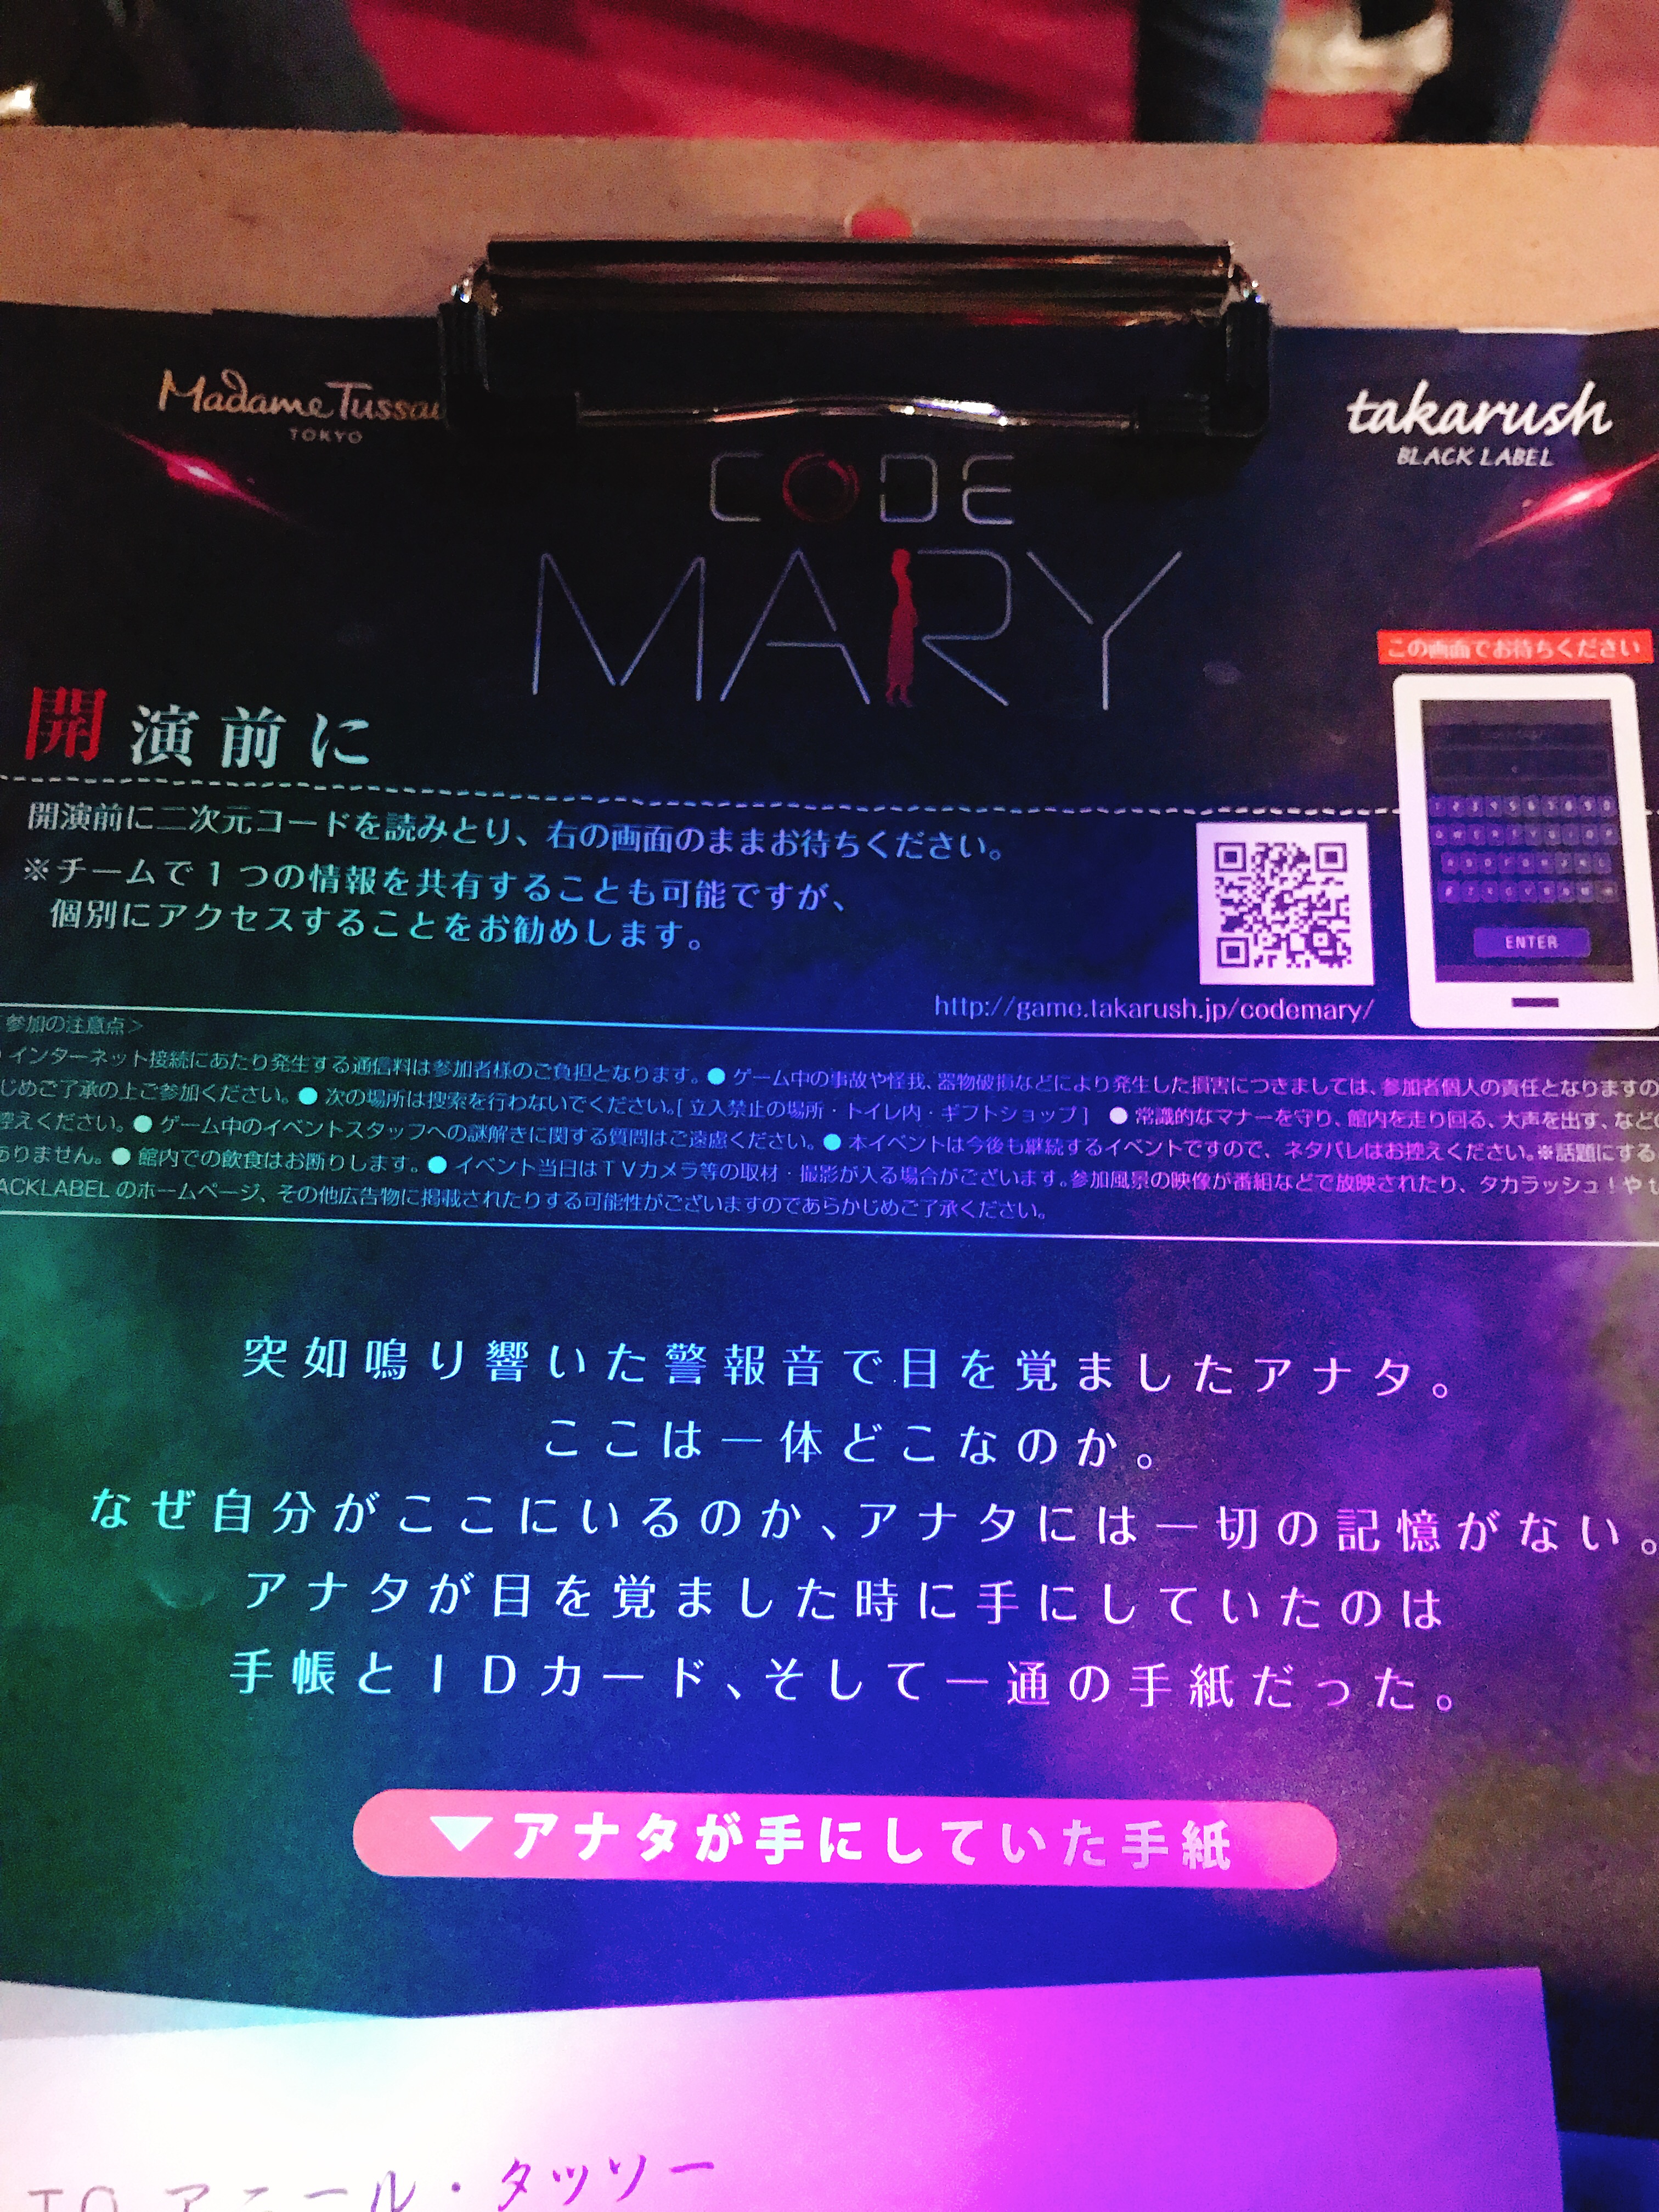 【201902】CODE MARY【マダム・タッソー東京】